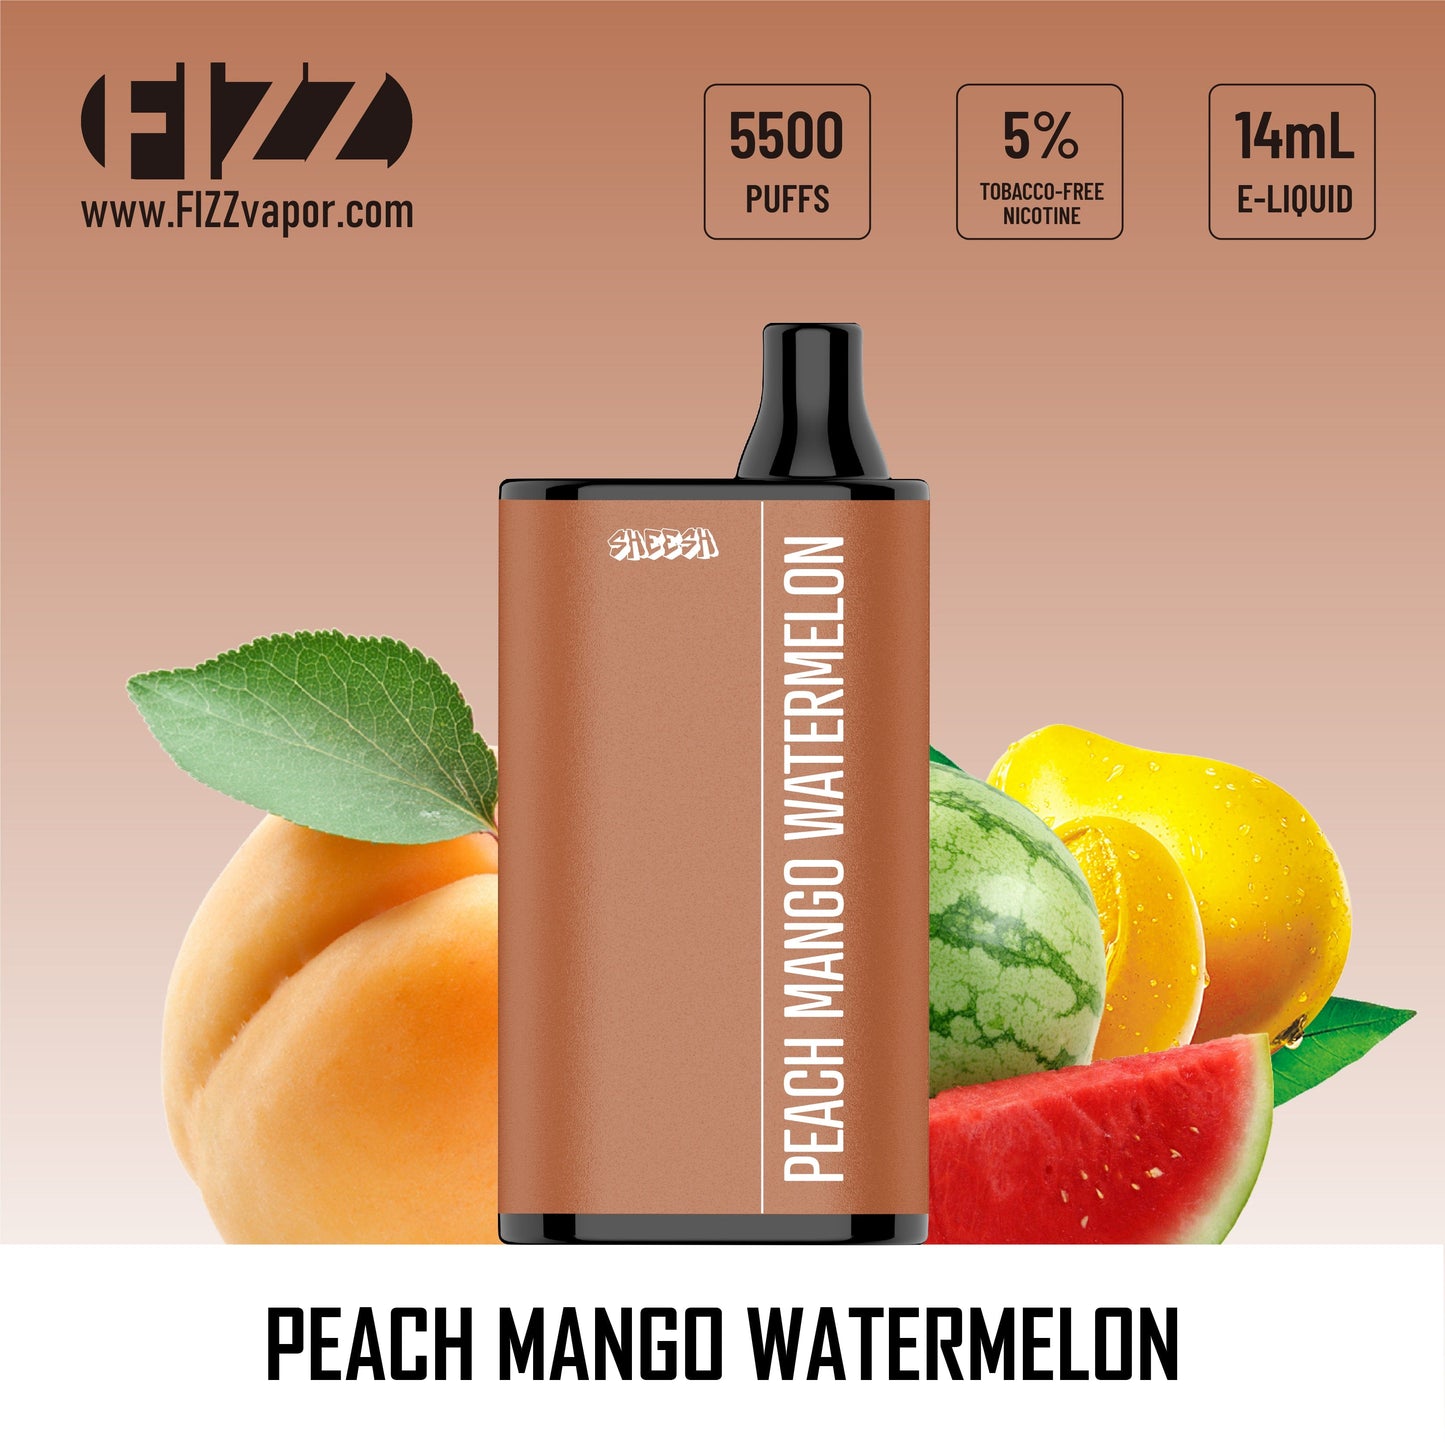 Sheesh - Peach Mango Watermelon